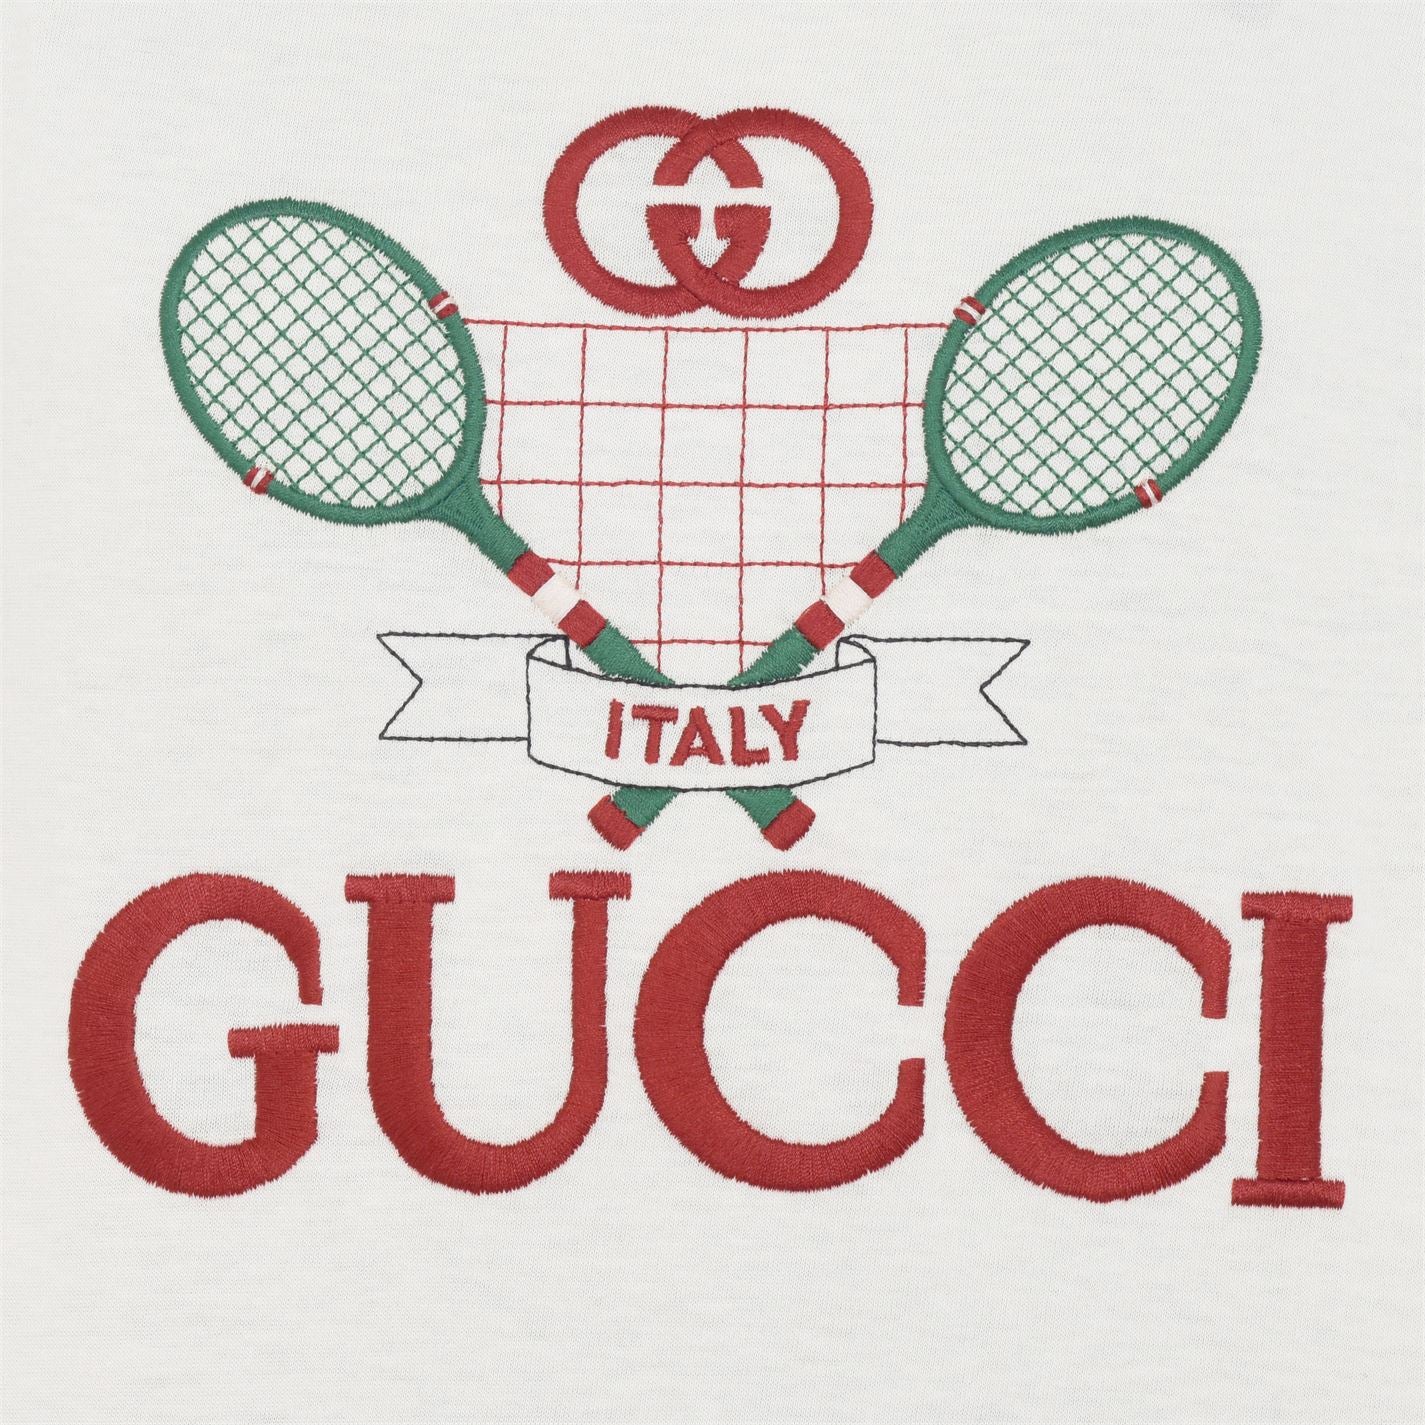 Kids Gucci Tennis Club T-Shirt - DANYOUNGUK